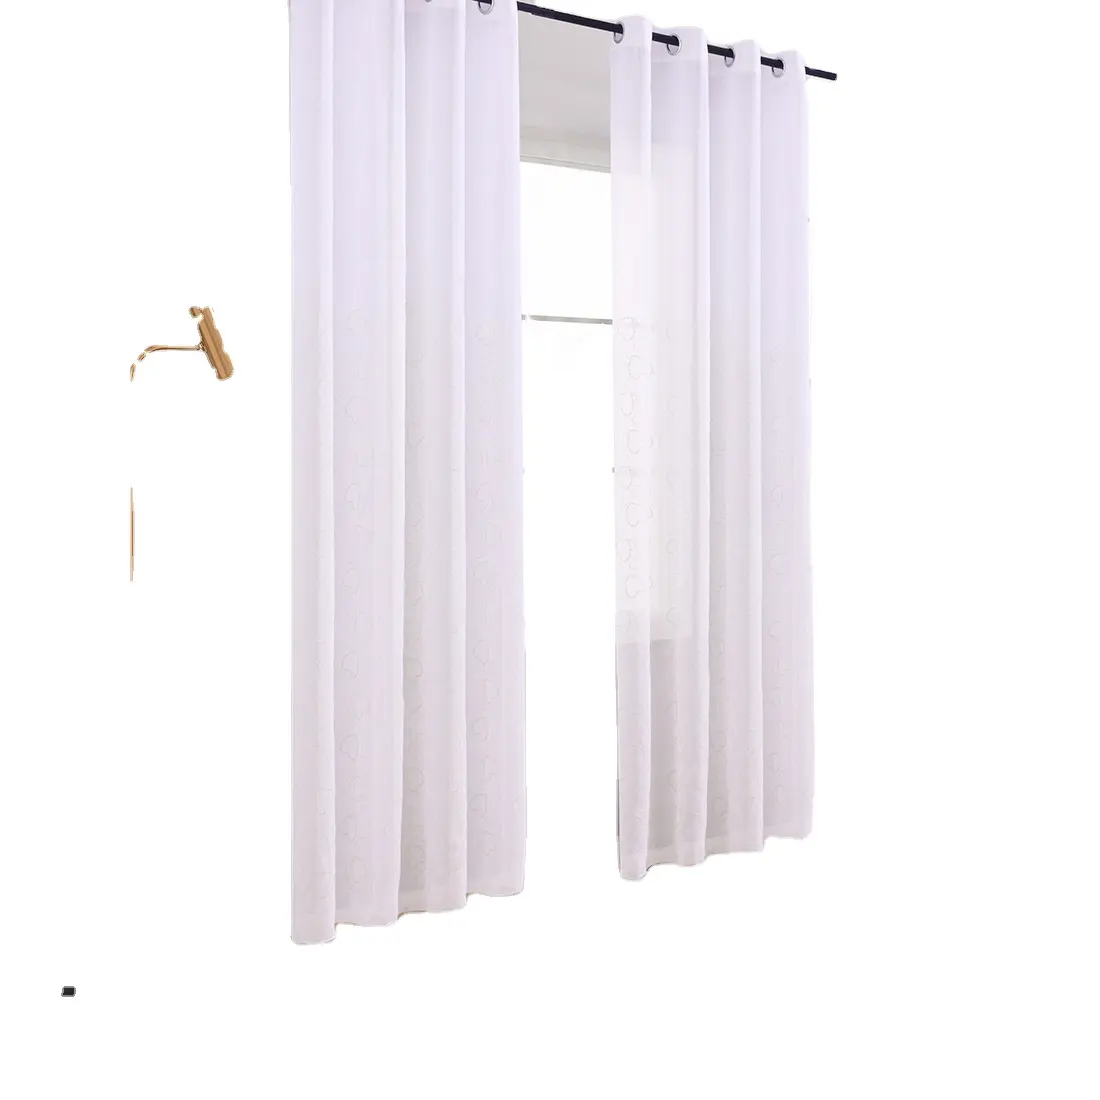 Gorden jendela tipis bordir bunga putih poliester desain kustom mewah untuk ruang dapur dan ruang tamu